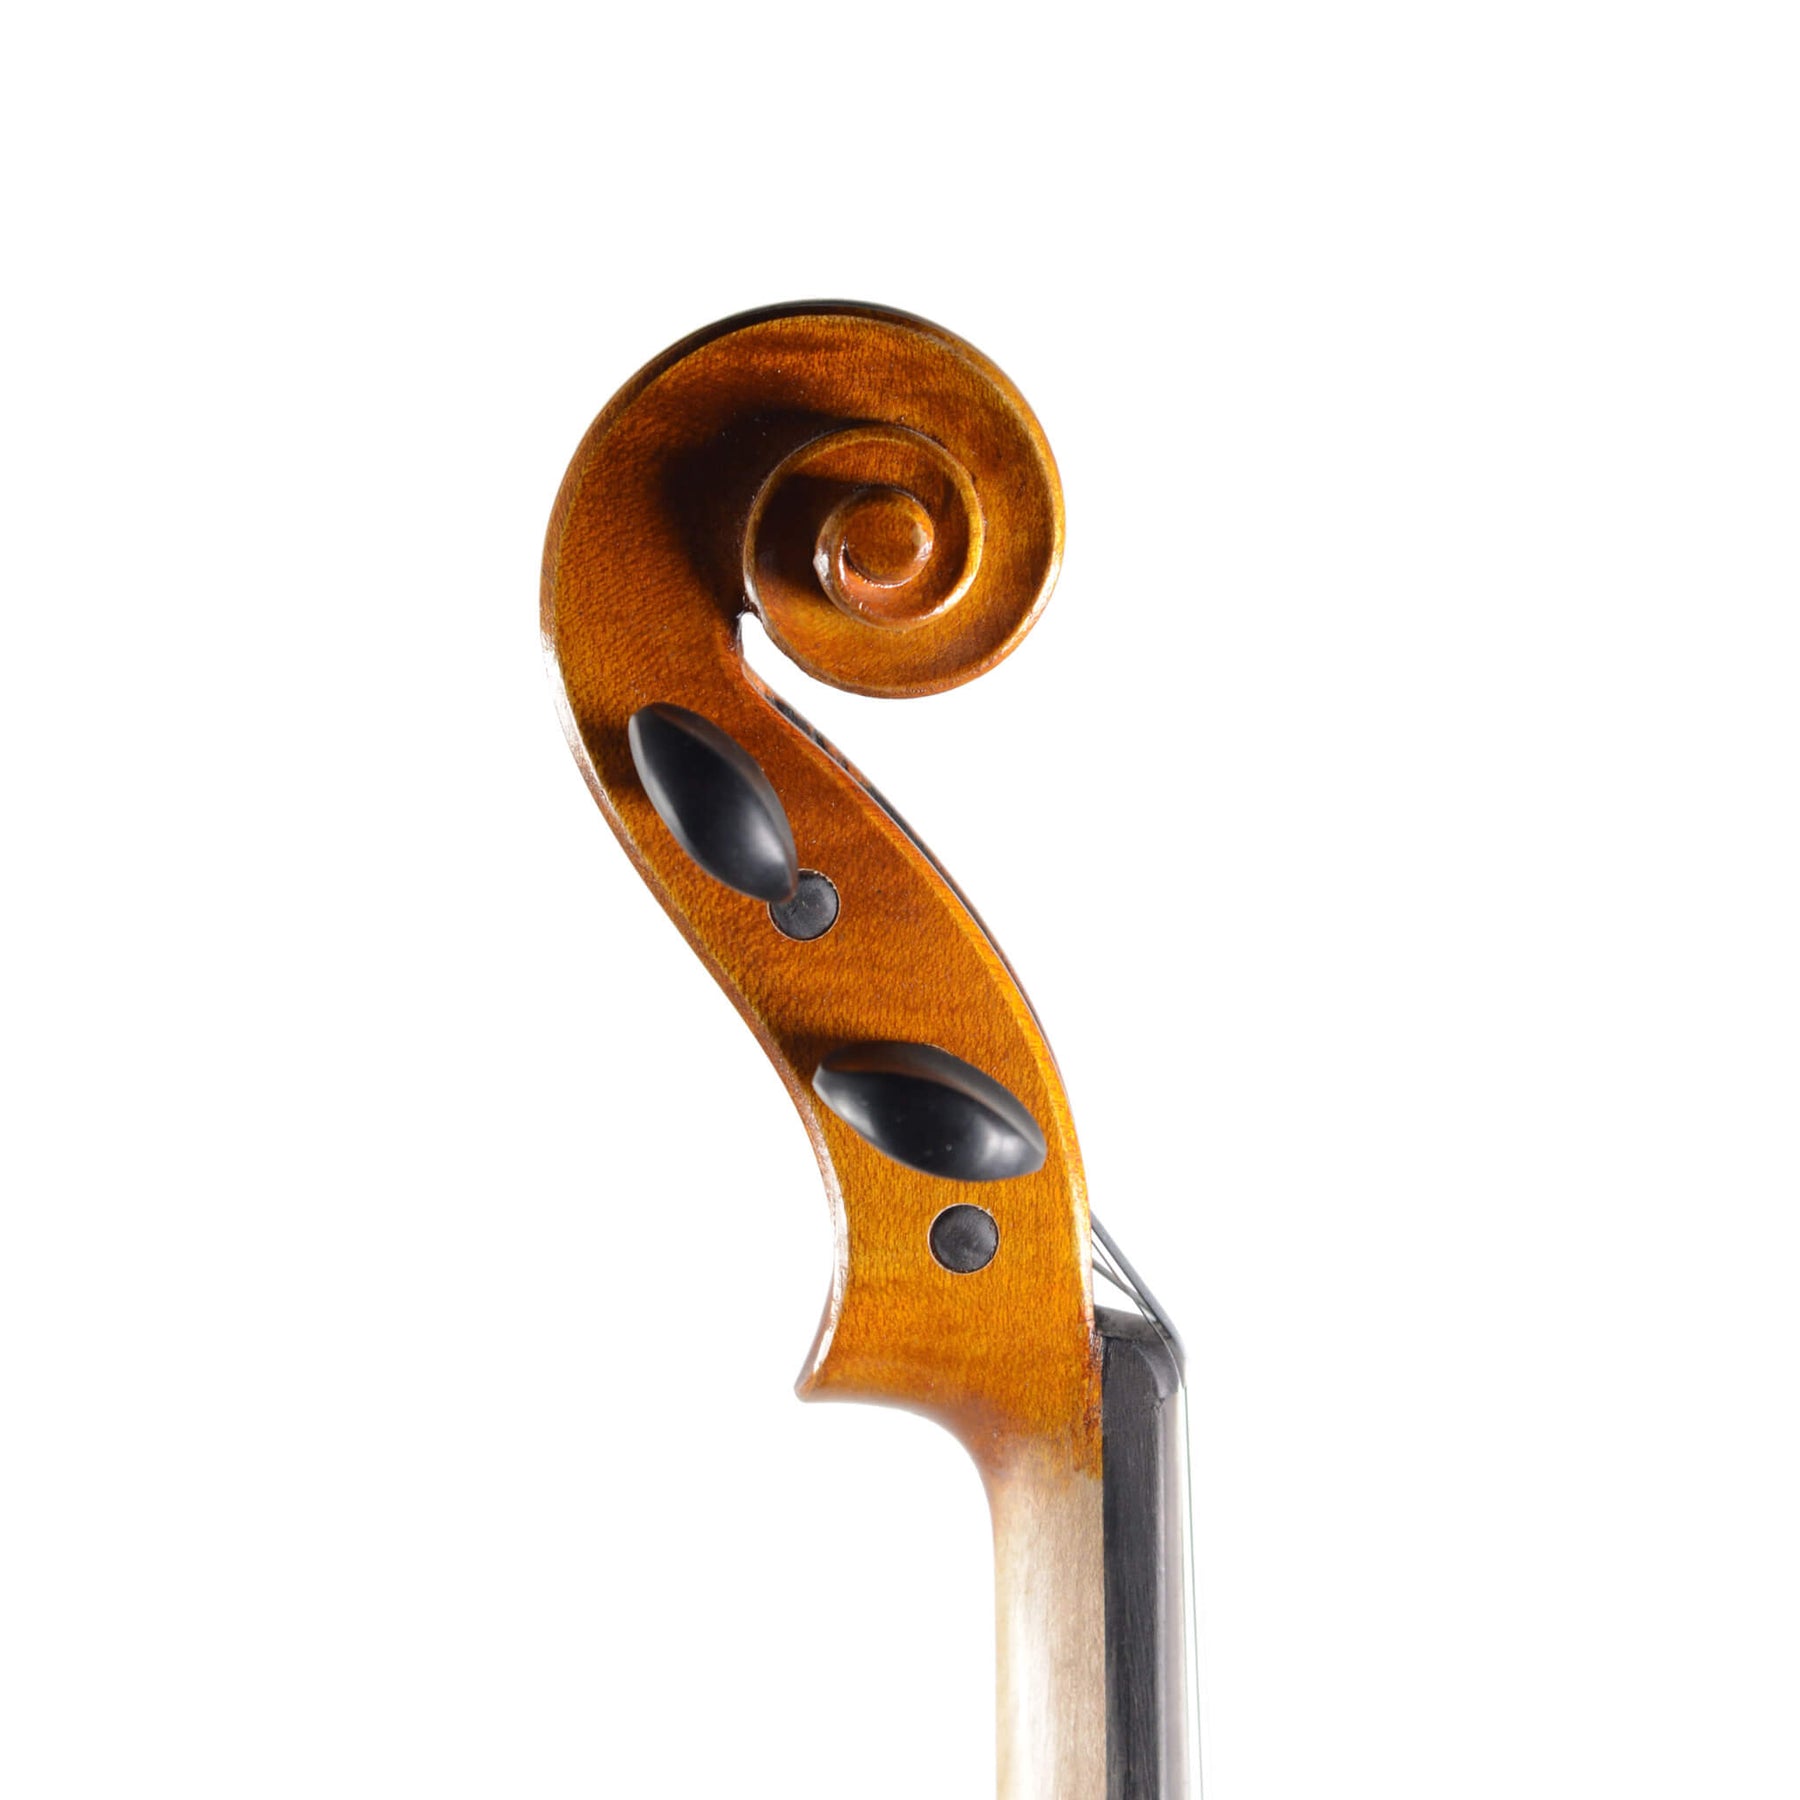 B-Stock Fiddlerman Left Handed Concert Violin Outfit